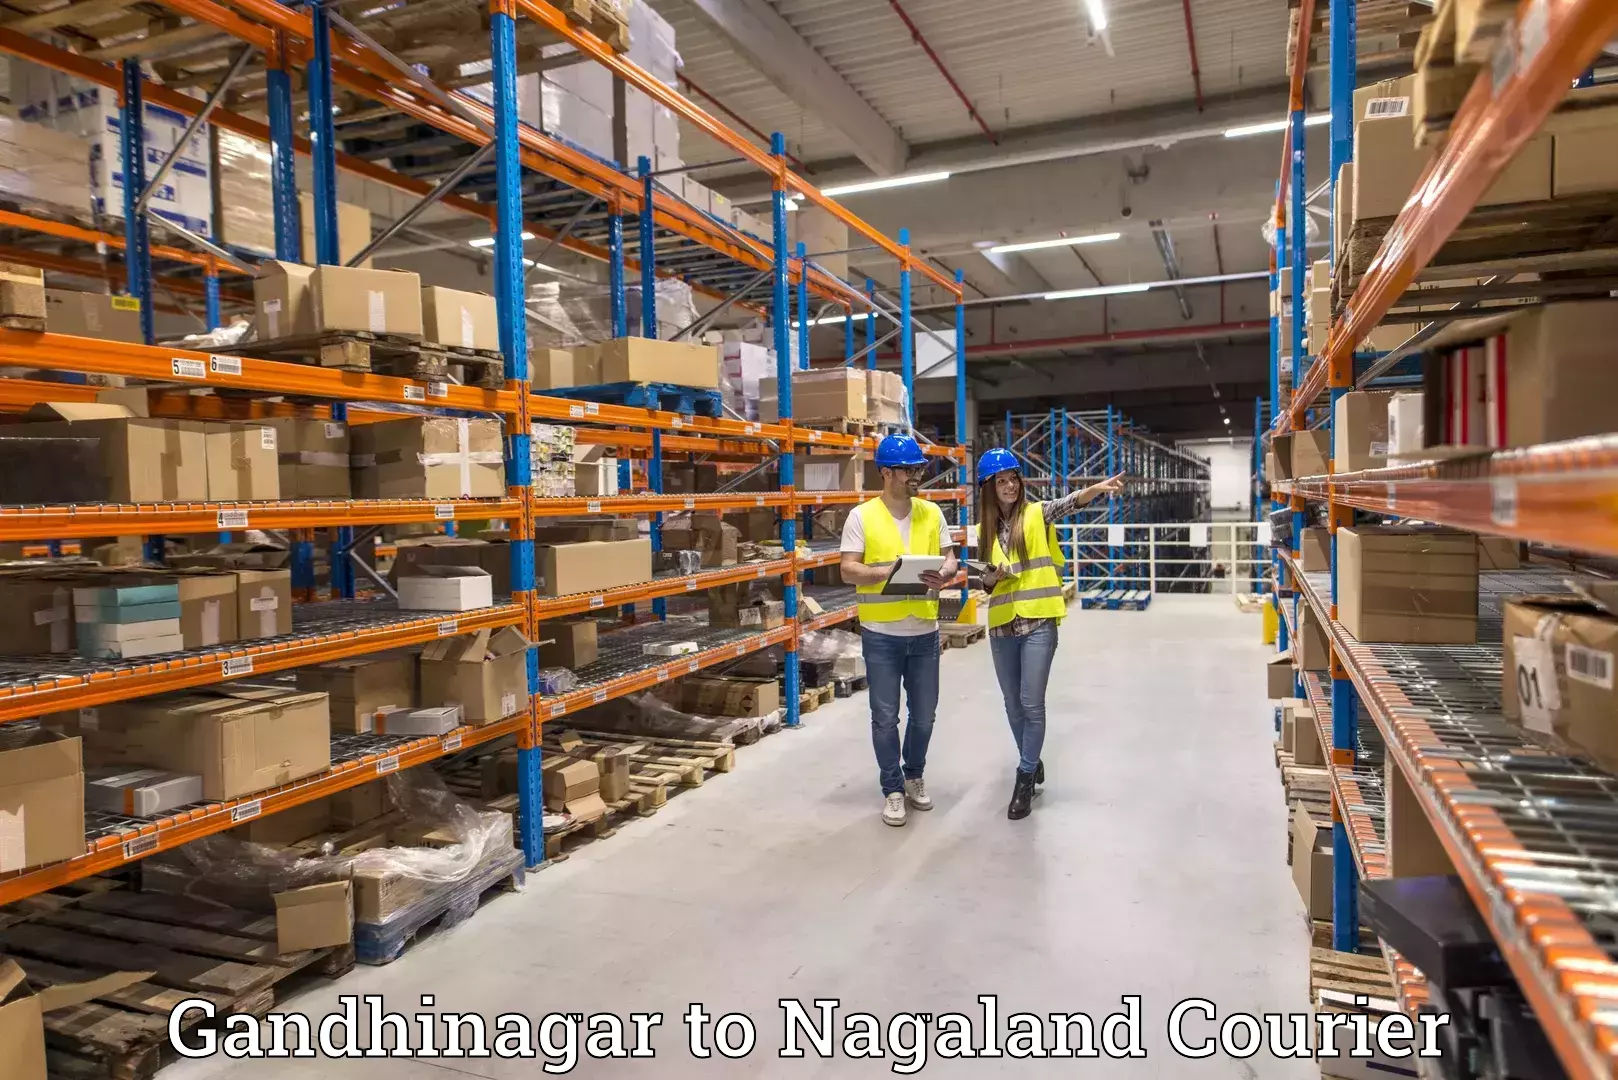 Nationwide parcel services Gandhinagar to Chumukedima